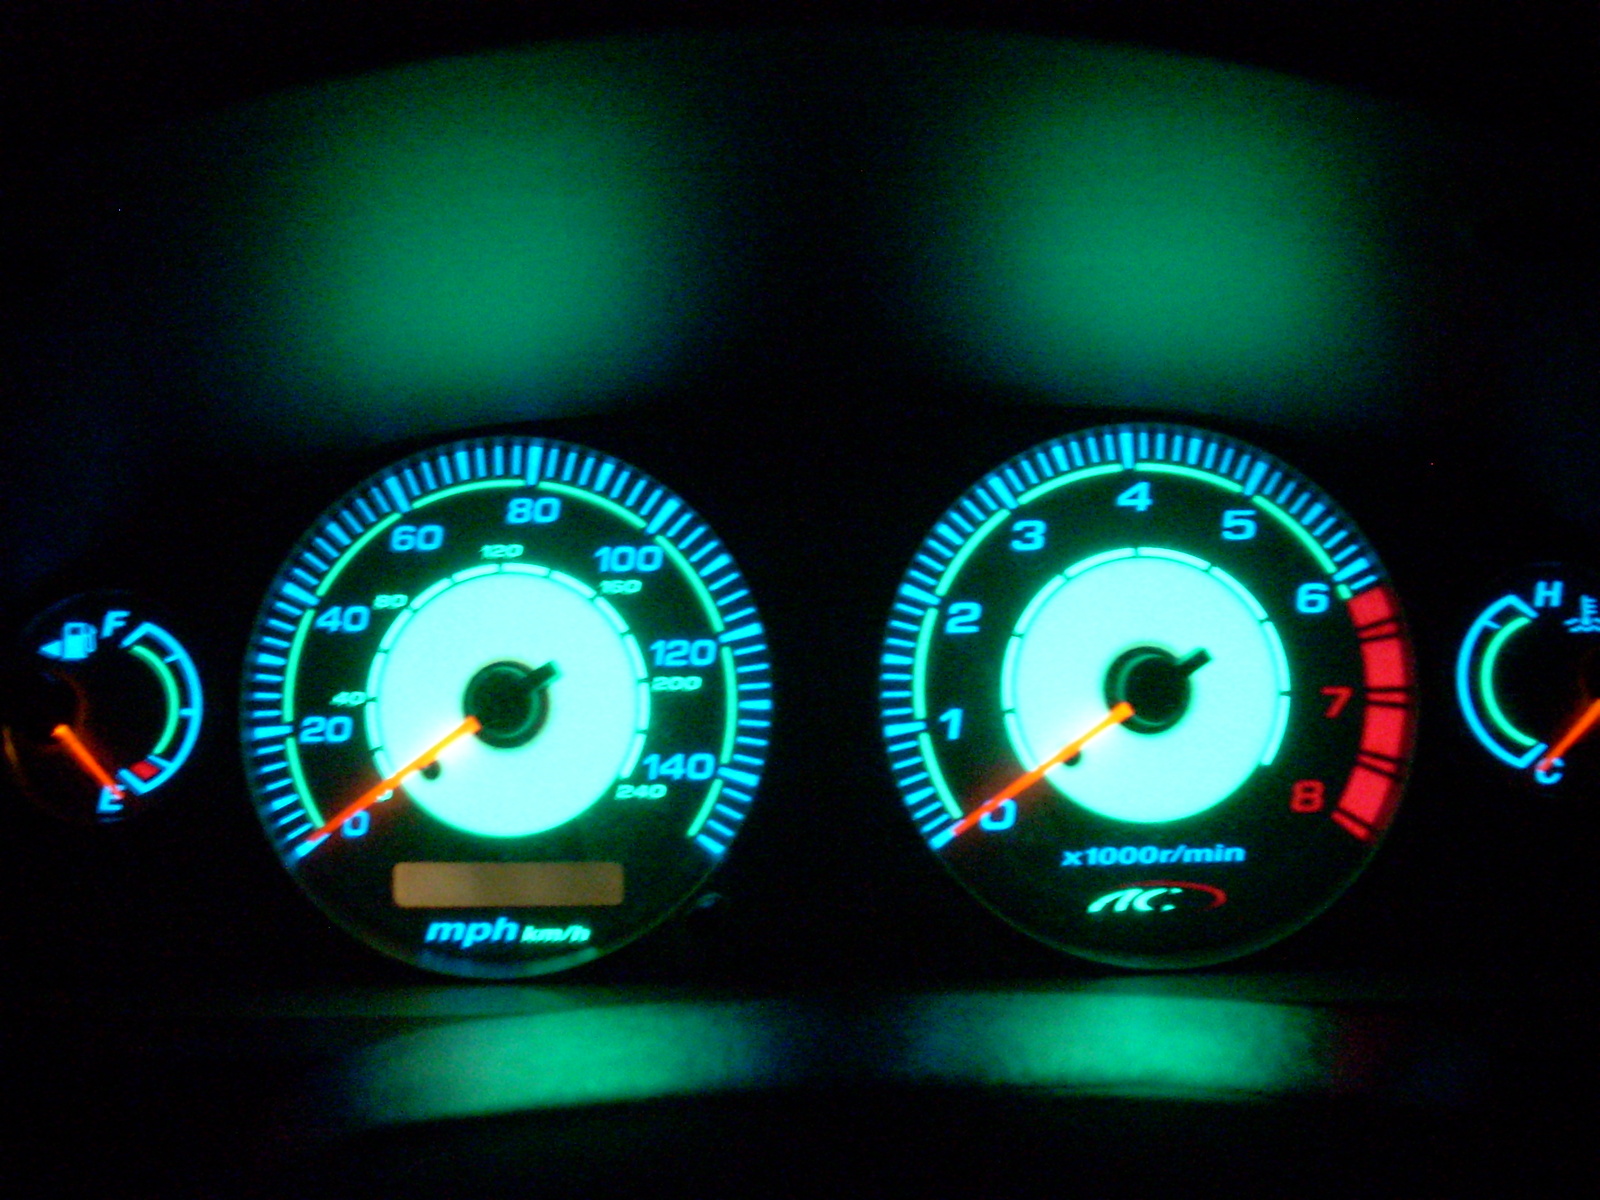 2003 Nissan sentra gauges